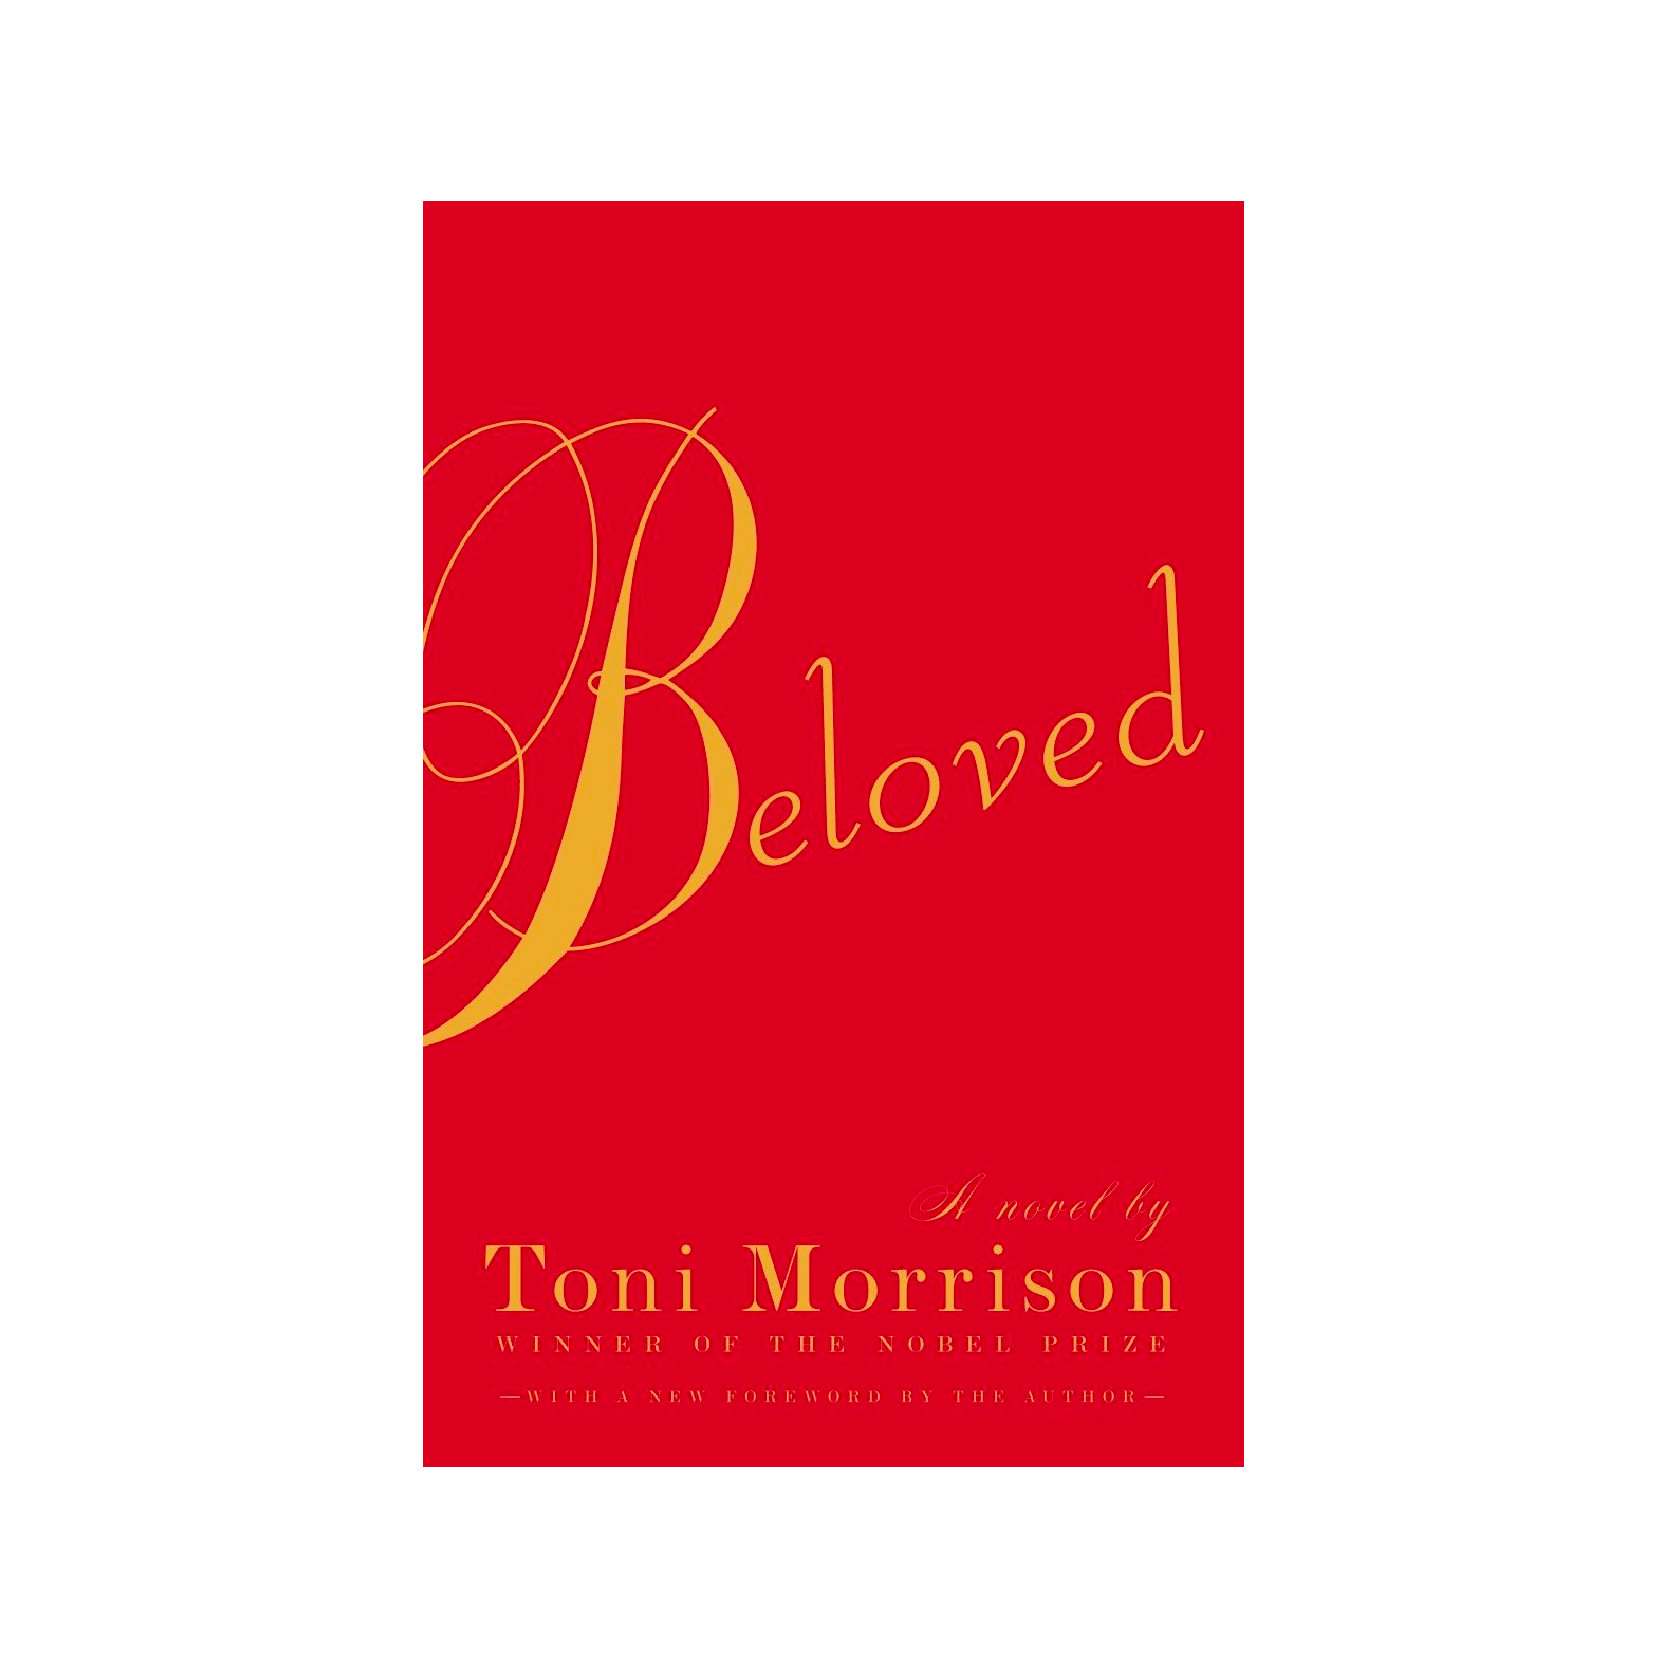 “Beloved” by Toni Morrison